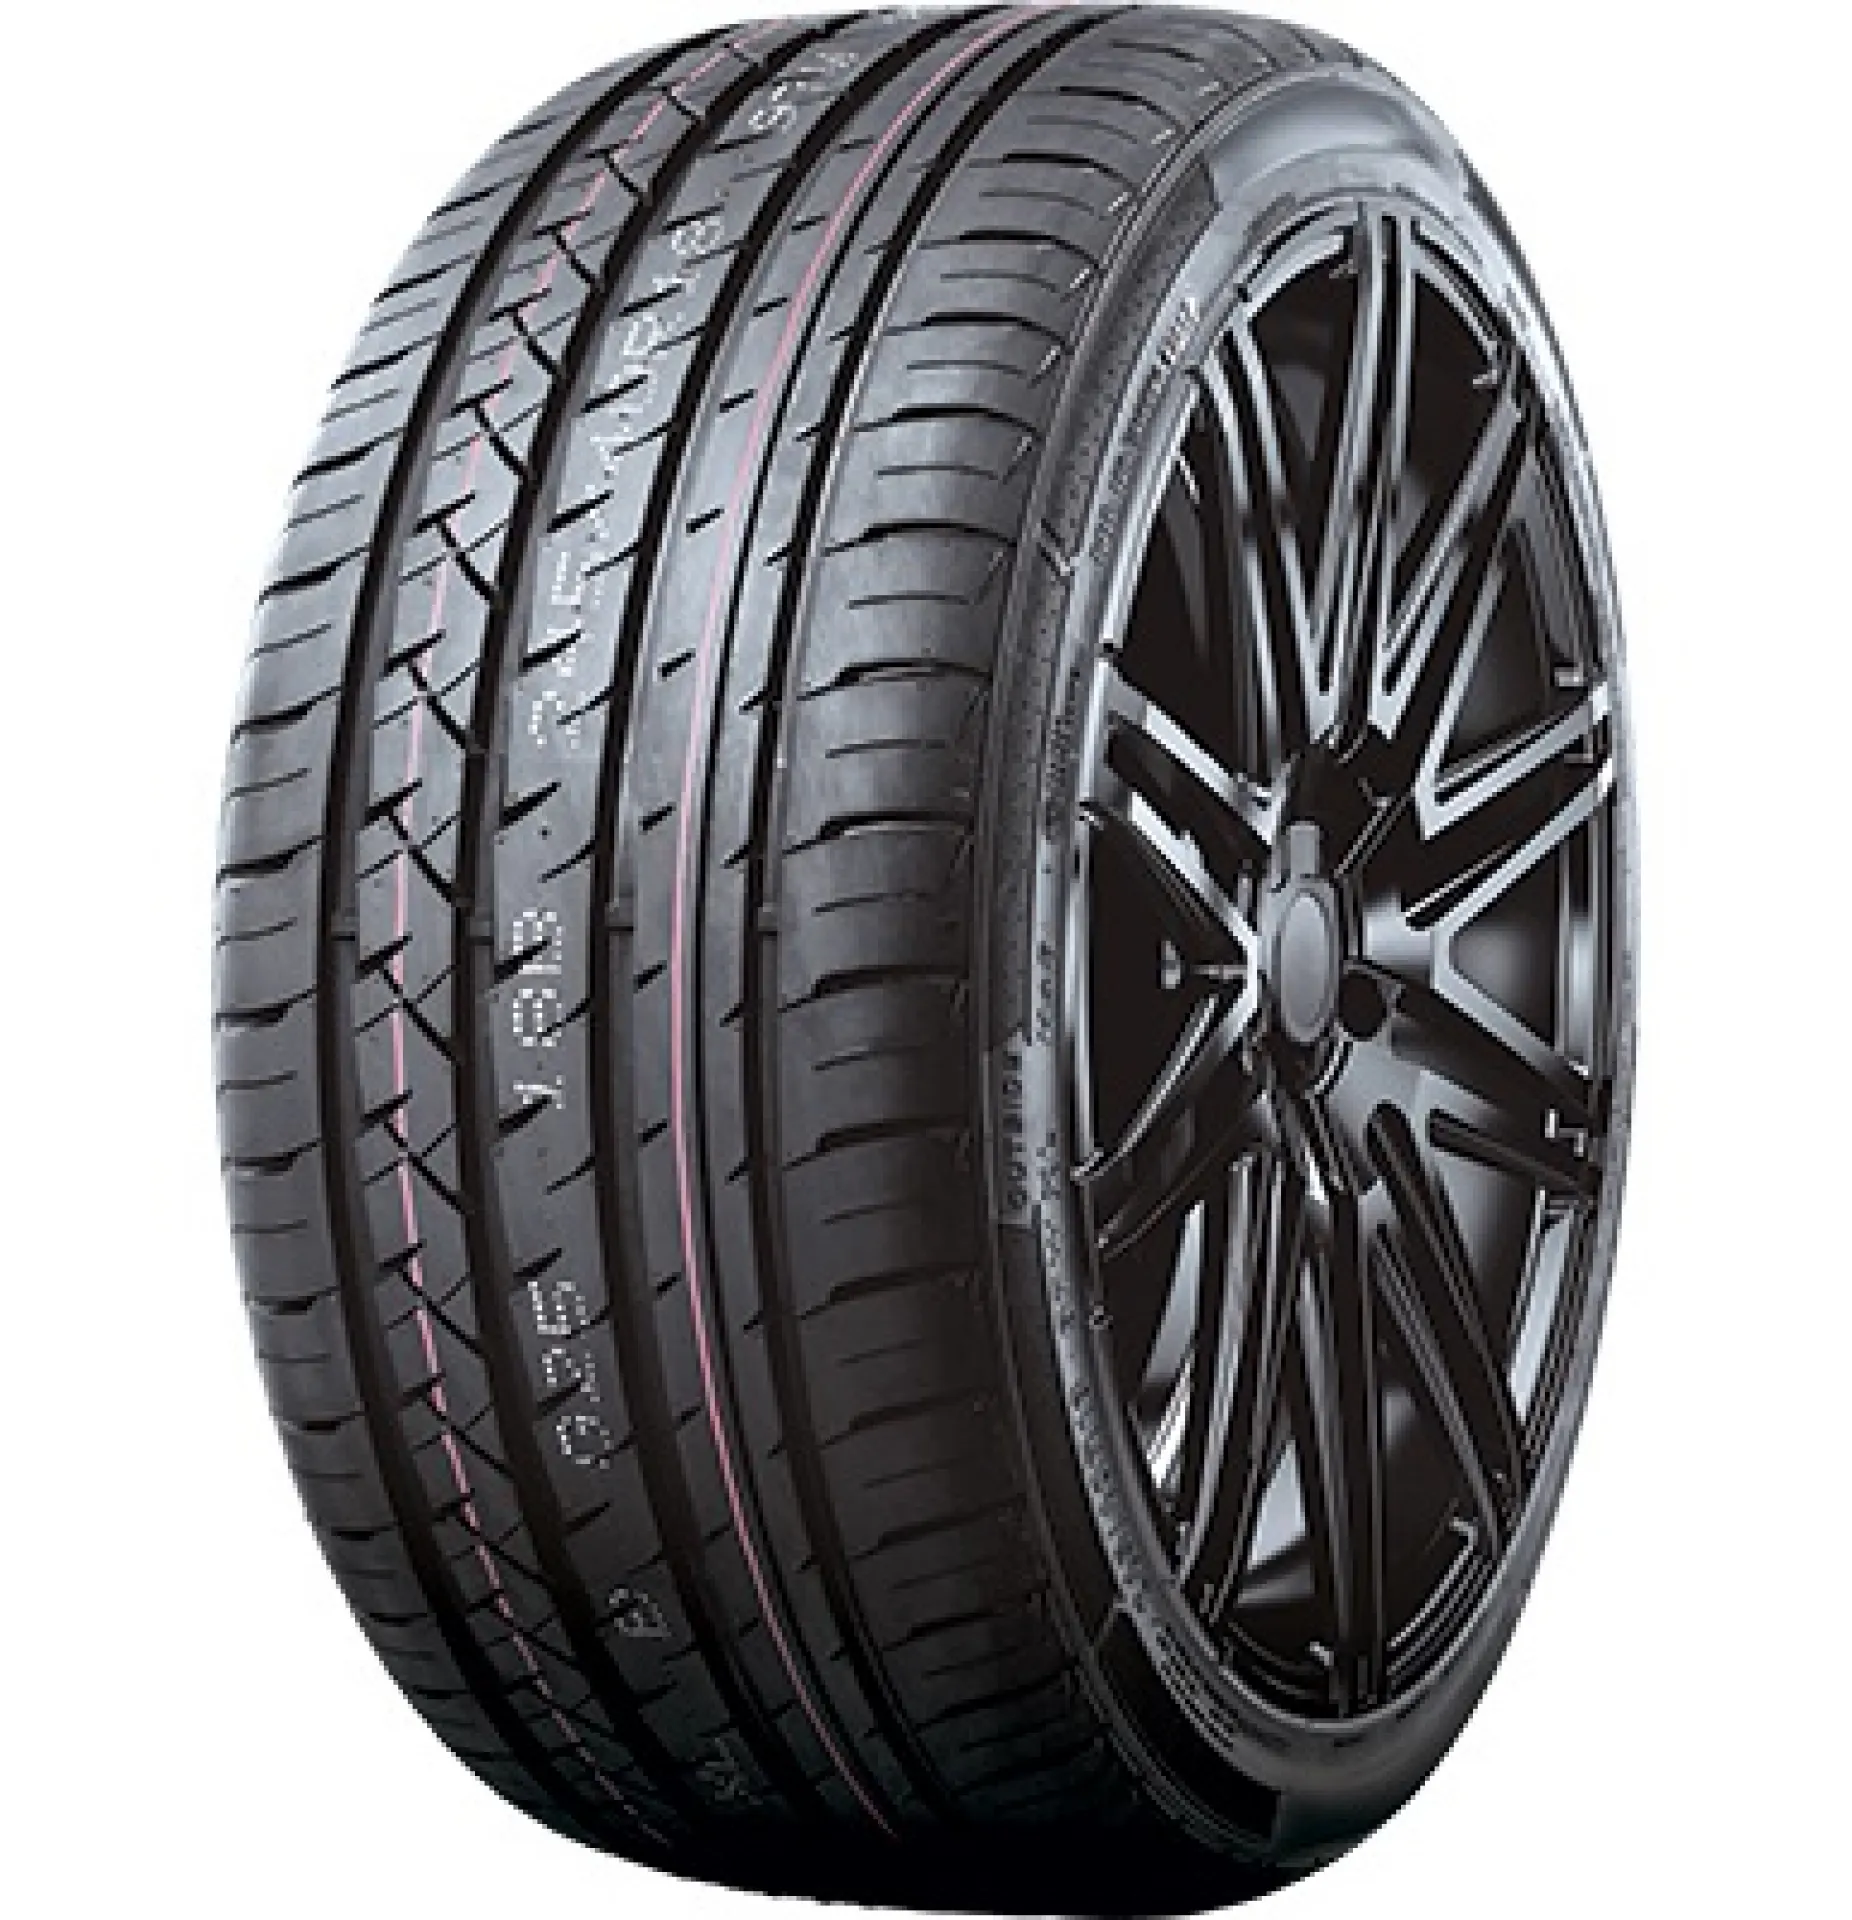 T-Tyre Four 225/45R17 94W XL